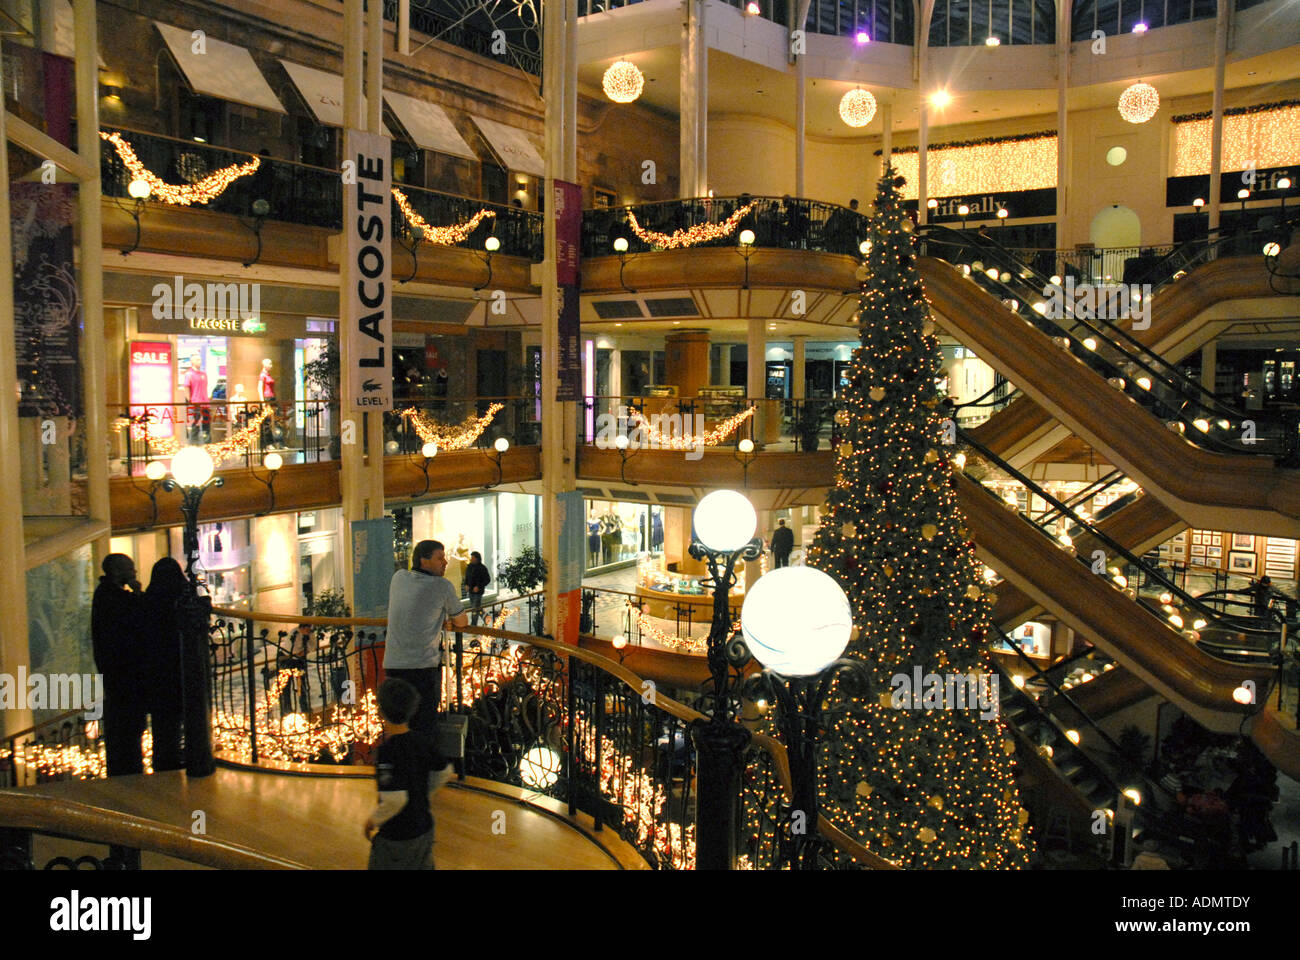 Princes Square Shopping Centre, Glasgow. L'Écosse. La veille de Noël Décembre 2006 Banque D'Images